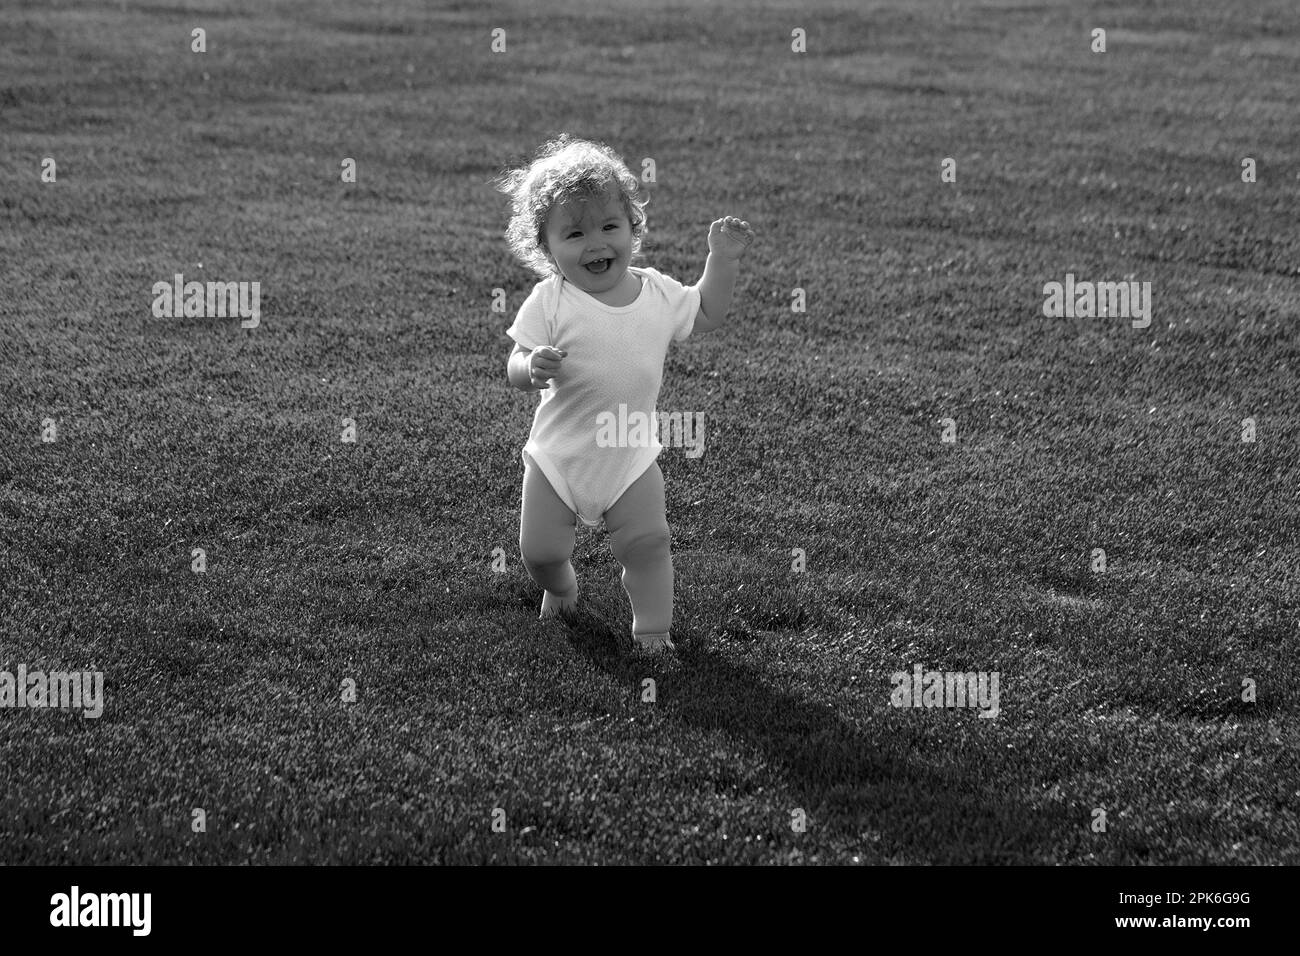 Nette lustige lachende Baby lernen zu kriechen, Spaß am Spielen auf dem Rasen beobachten Sommer im Garten. Glückliche Kindheit und Kinderpflege. Stockfoto